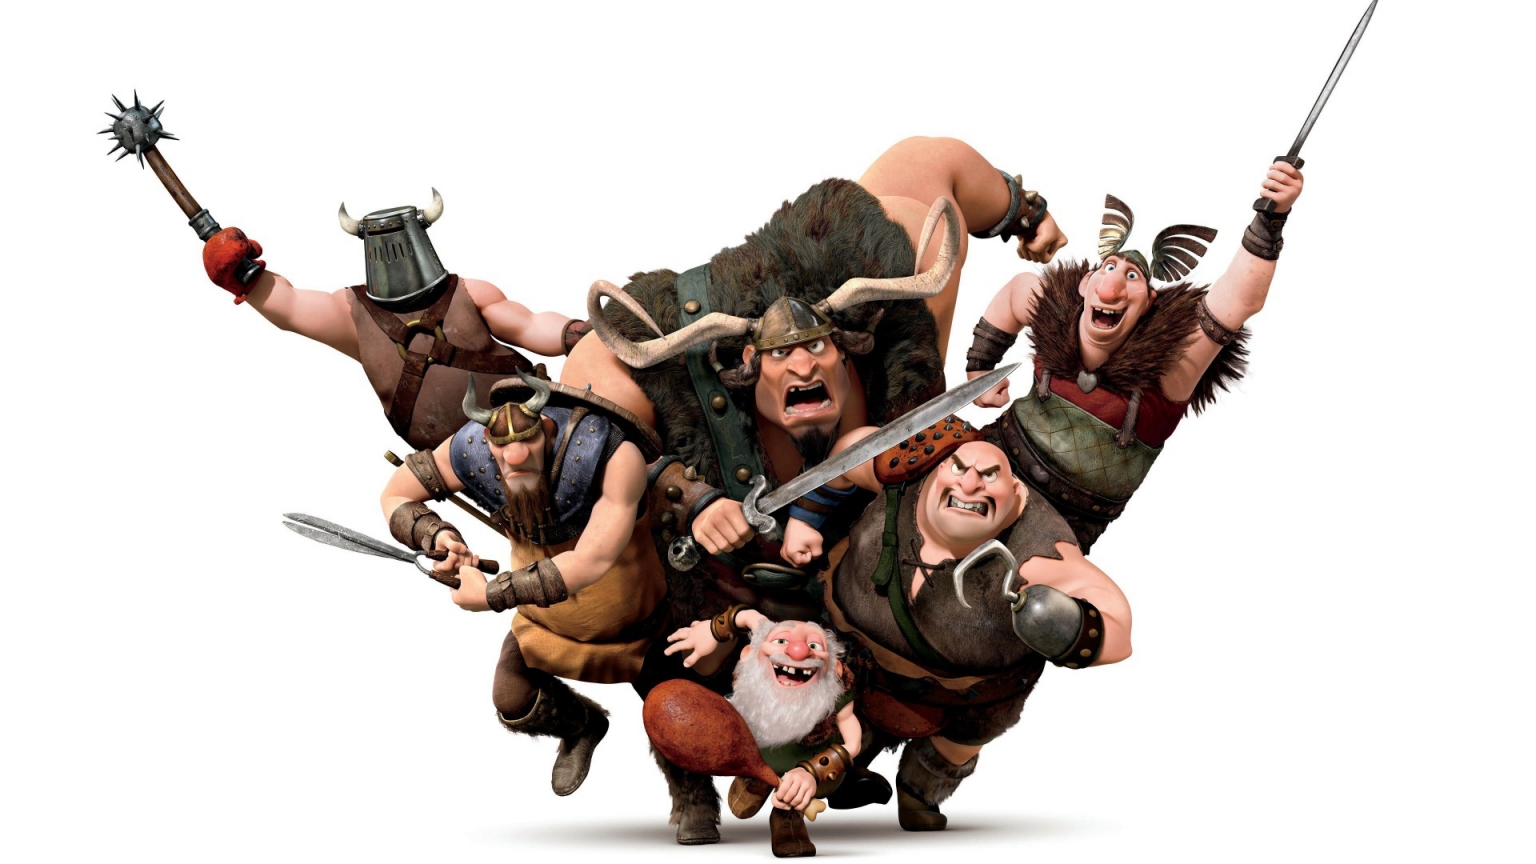 Vikings Warriors for 1536 x 864 HDTV resolution